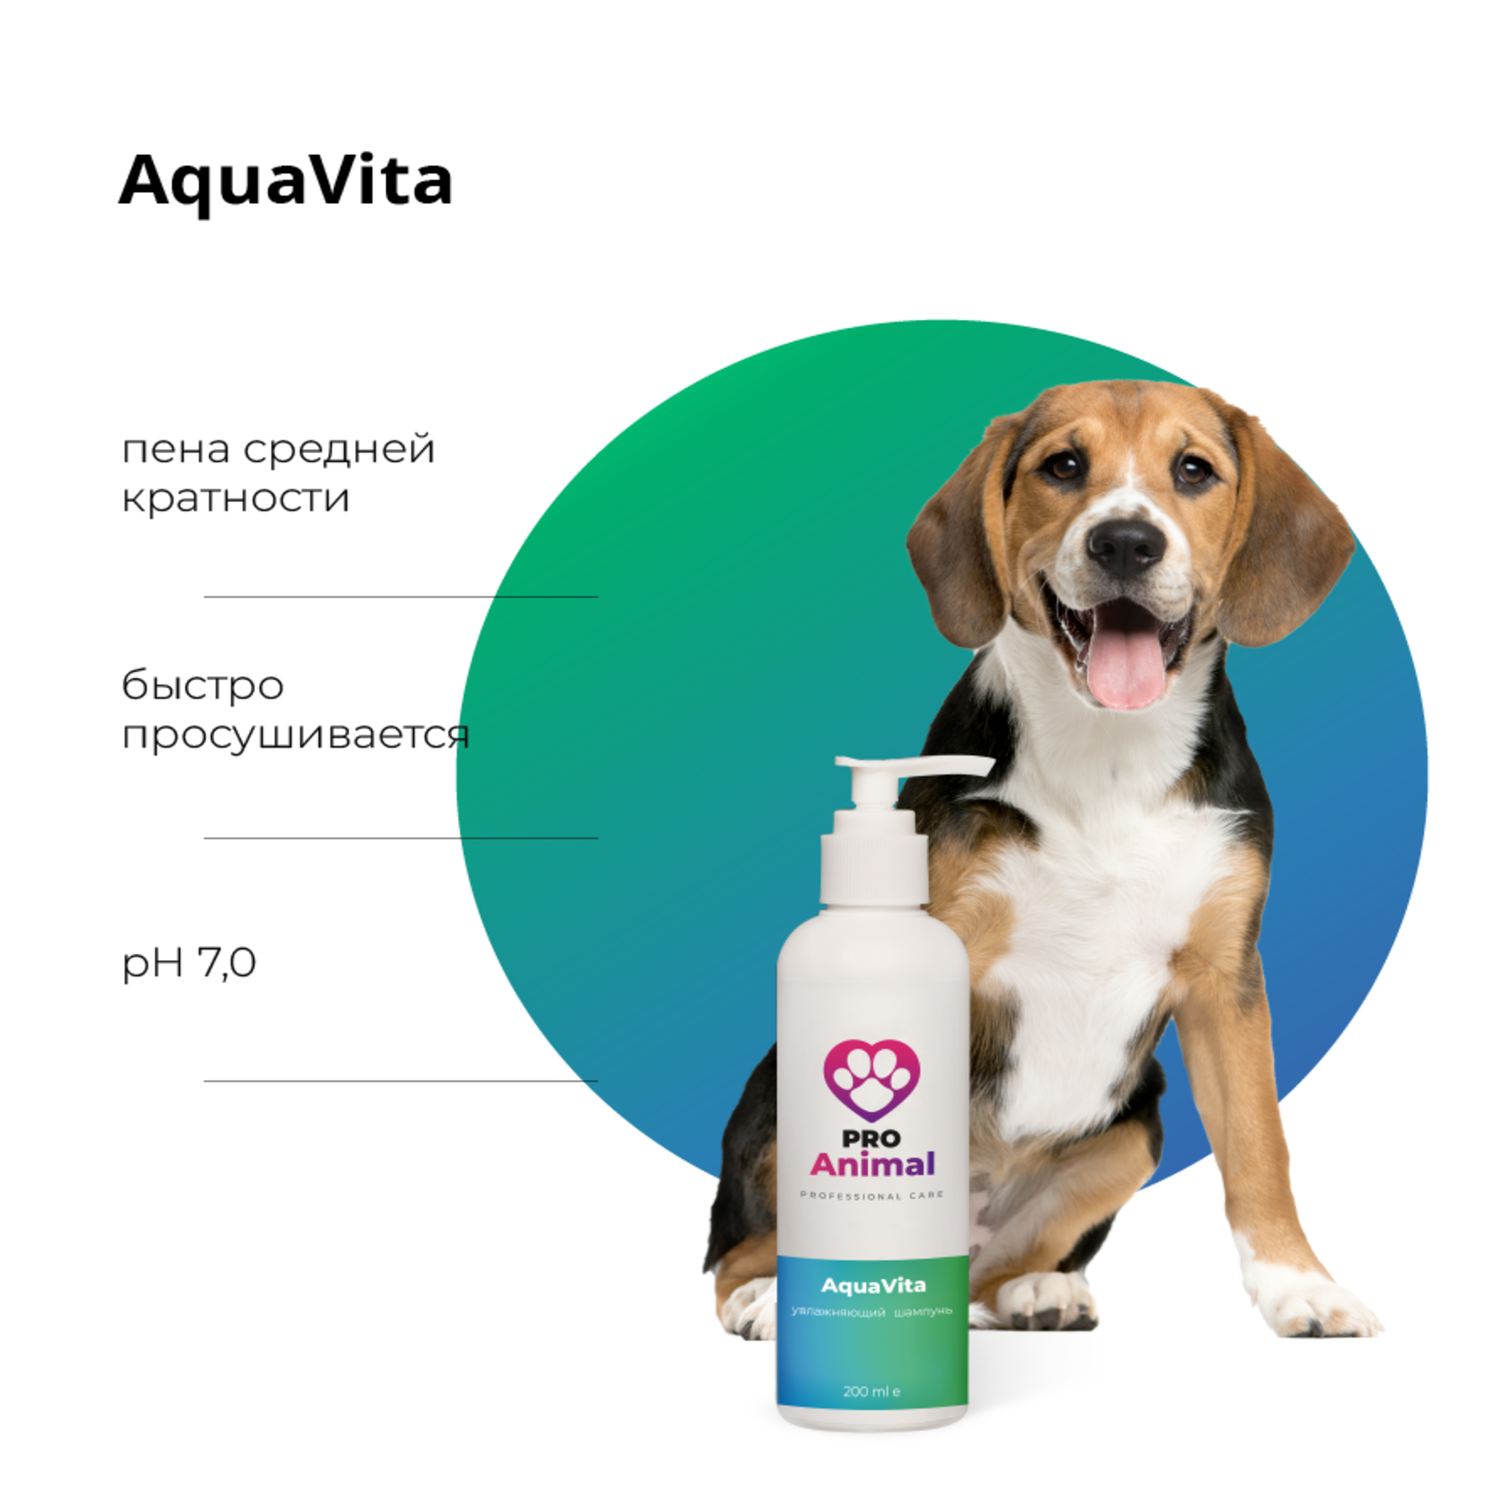 Шампунь увлажняющий AquaVita ProAnimal Универсальный профессиональный увлажняющий для собак - фото 2